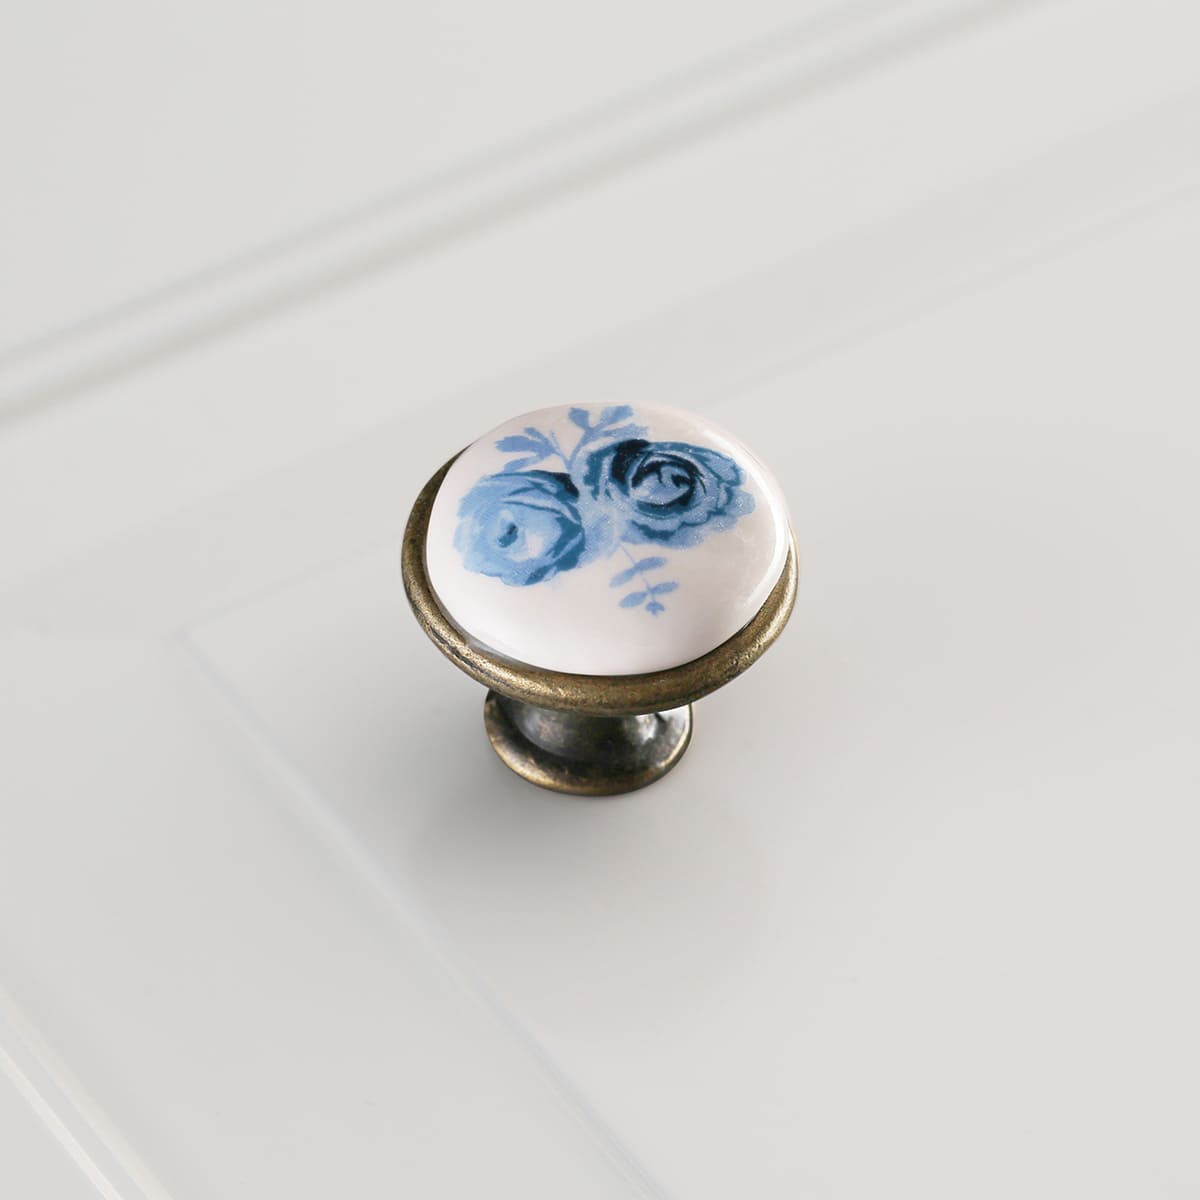 Ручка мебельная керамика кнопка GP-0728-J4-A (синяя роза) старое золото GTV 14094 Ручка мебельная керамика кнопка GP-0728-J4-A (синяя роза) старое золото - фото 4